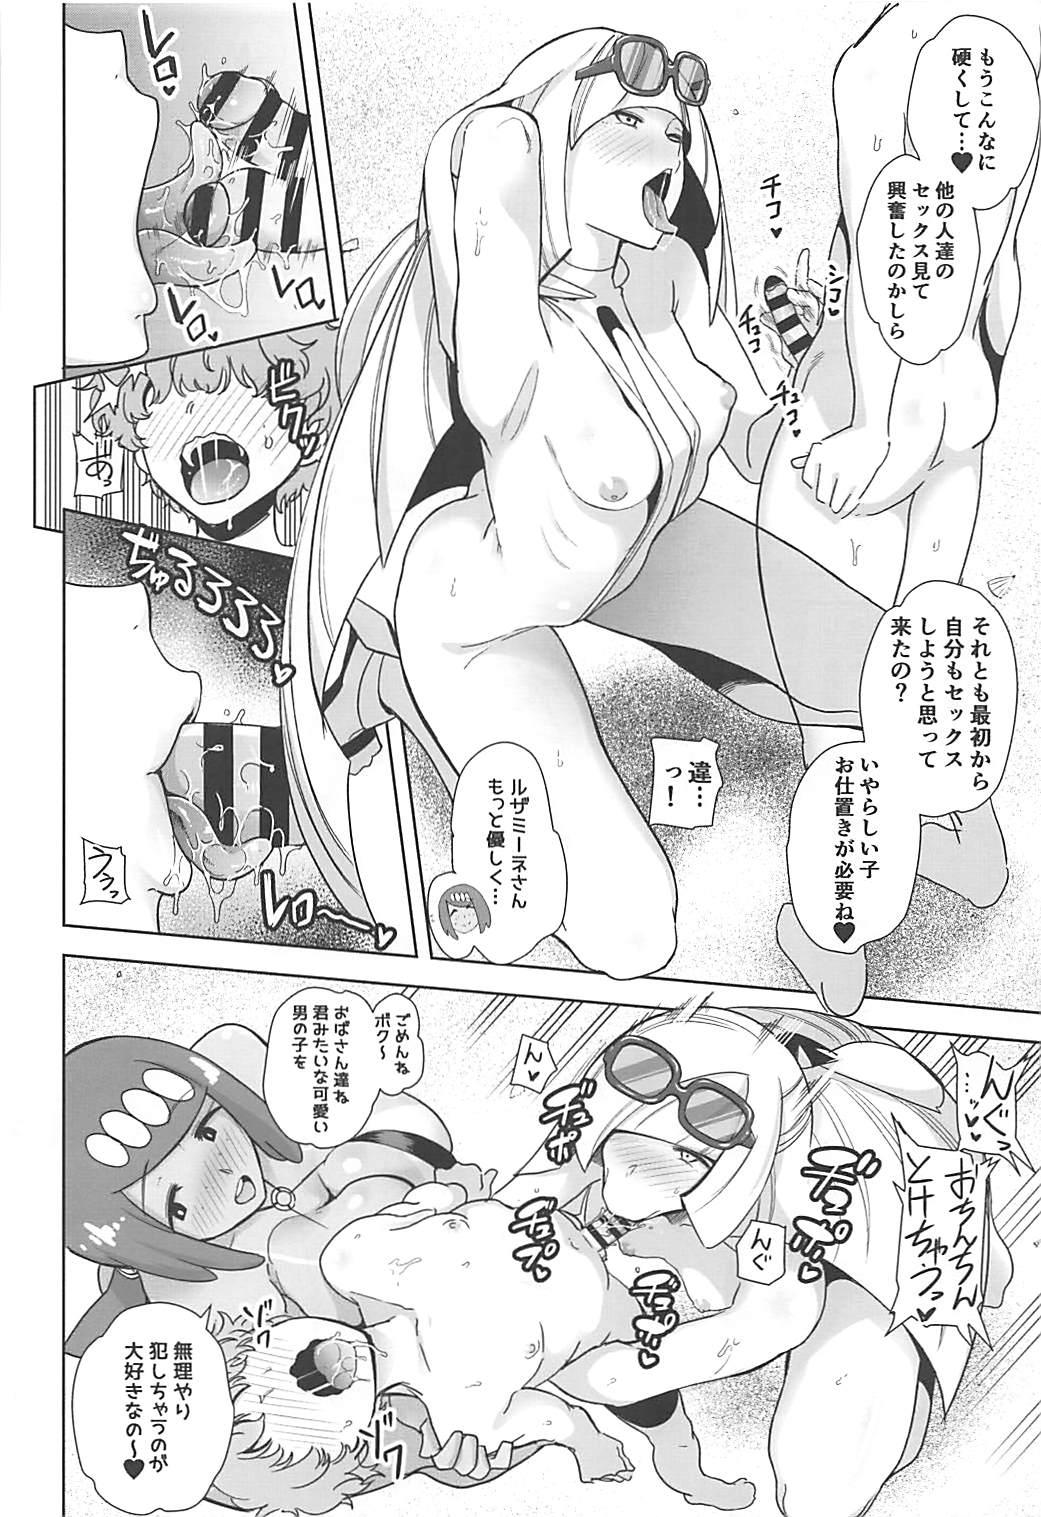 Abuse Alola no Yoru no Sugata 3 - Pokemon Ex Gf - Page 5